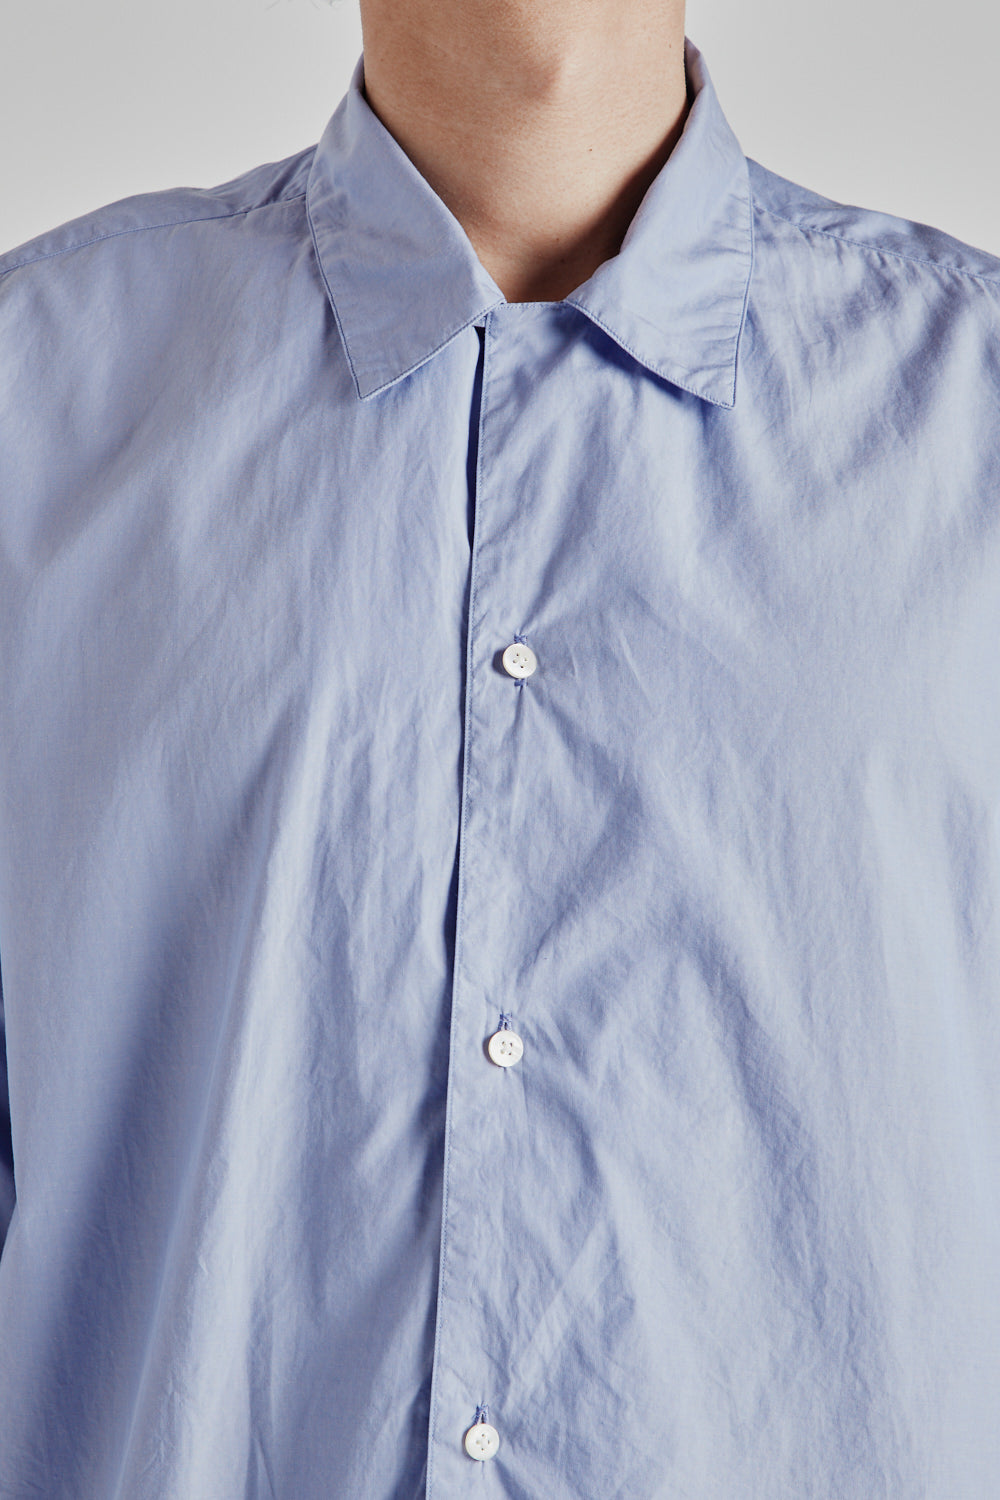 Chambray Open Collar Shirt - Saxe